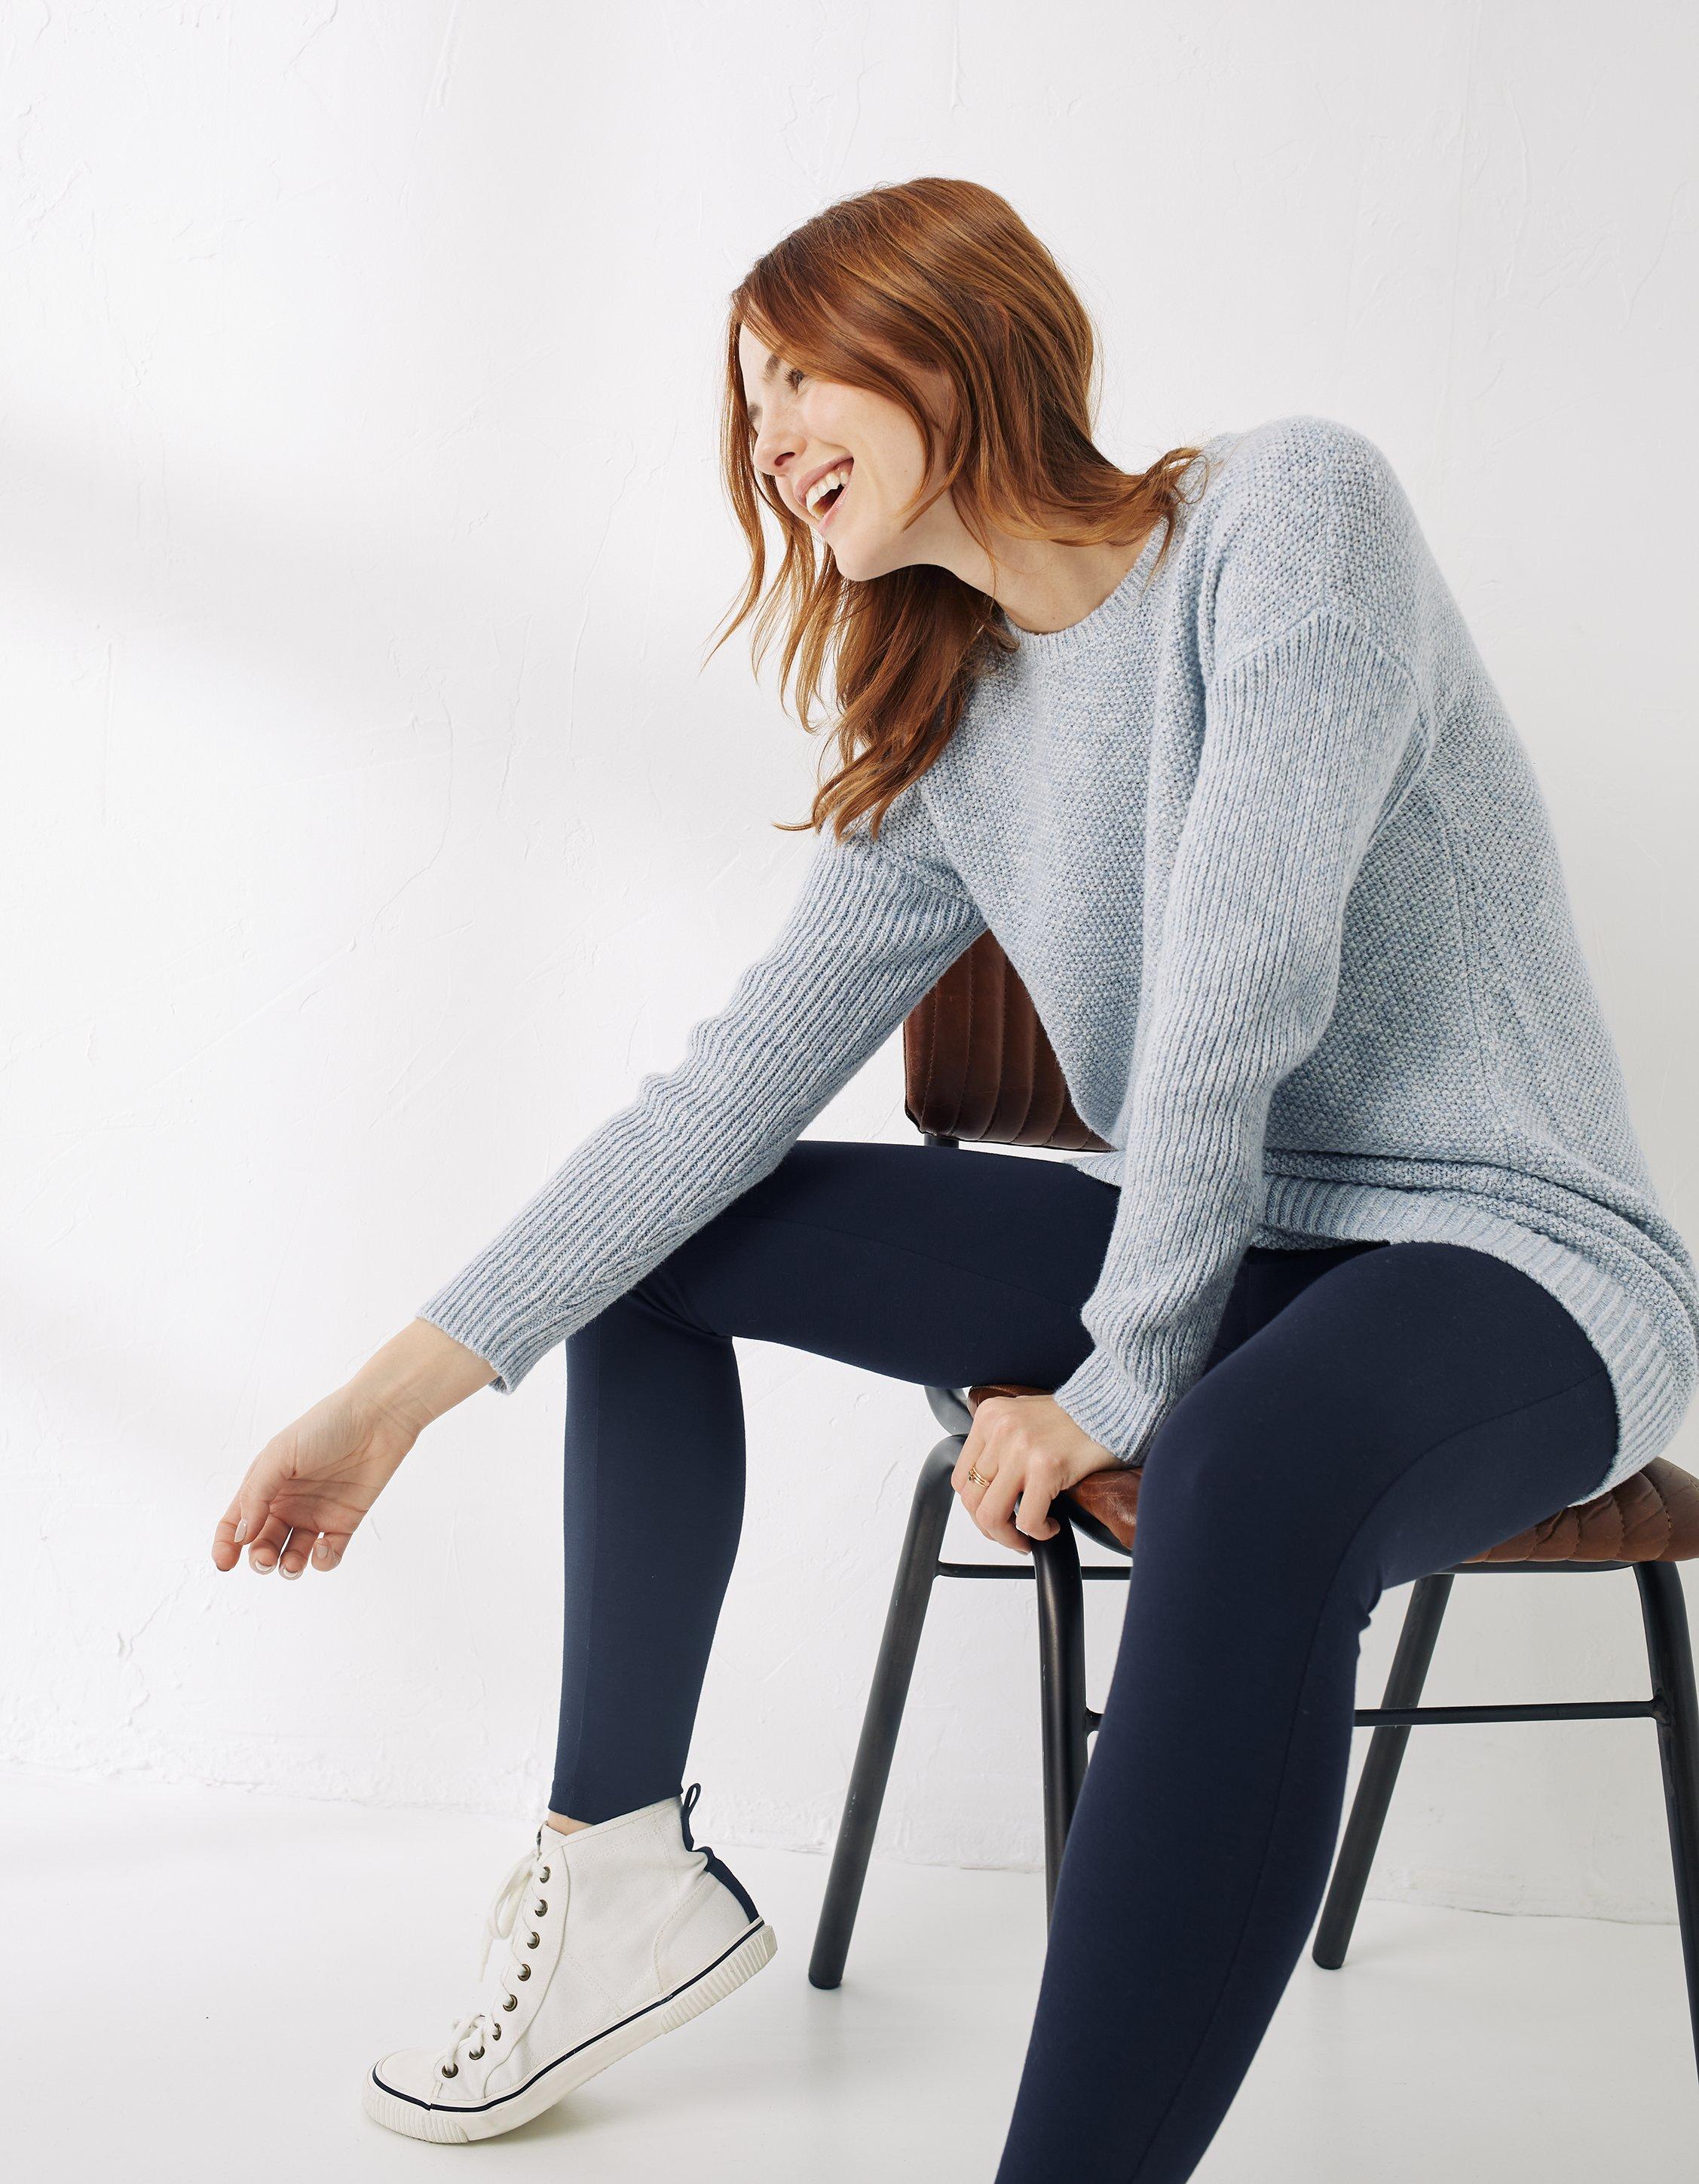 Leanne Longline Sweater, Sweaters & Cardigans